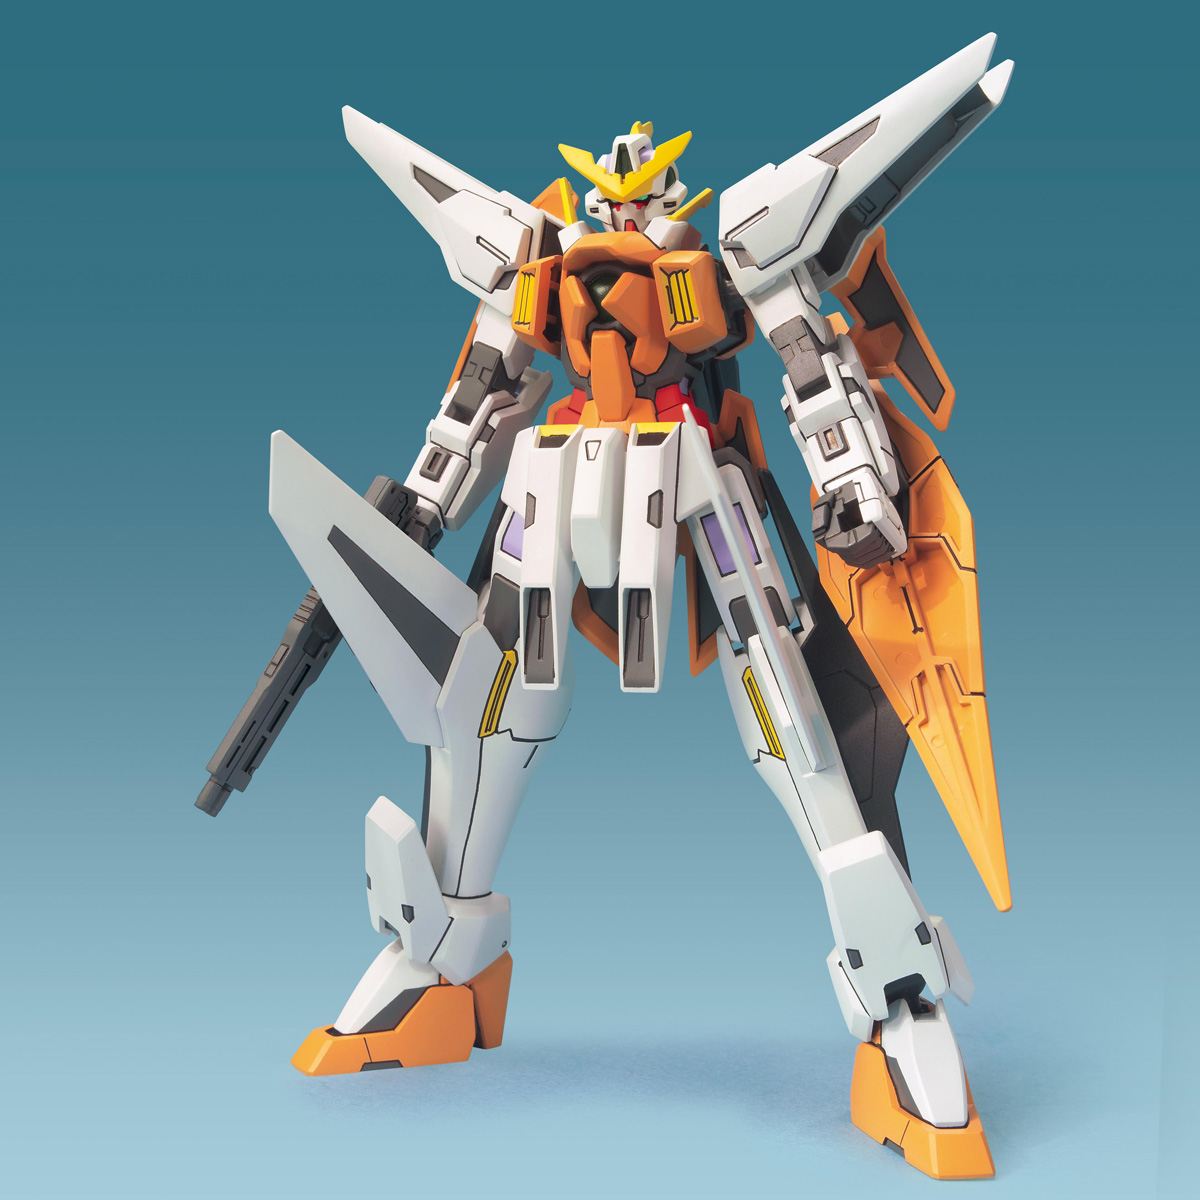 FG 1/144 GN-003 ガンダムキュリオス [Gundam Kyrios] | ガンプラ 